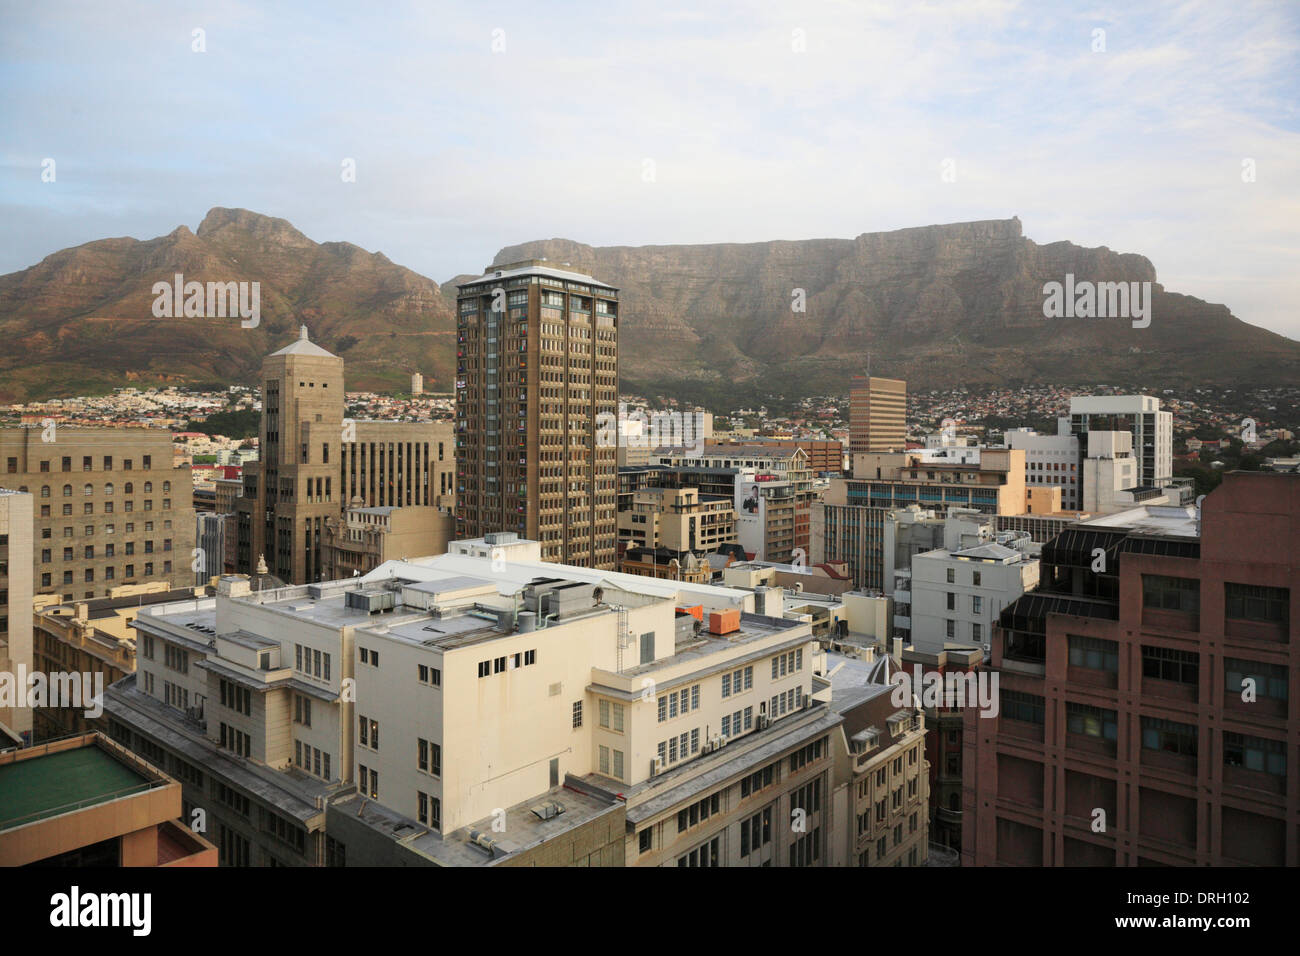 Cape Ciudad del distrito central de negocios de Table Mountain y Devil's Peak en el fondo Foto de stock